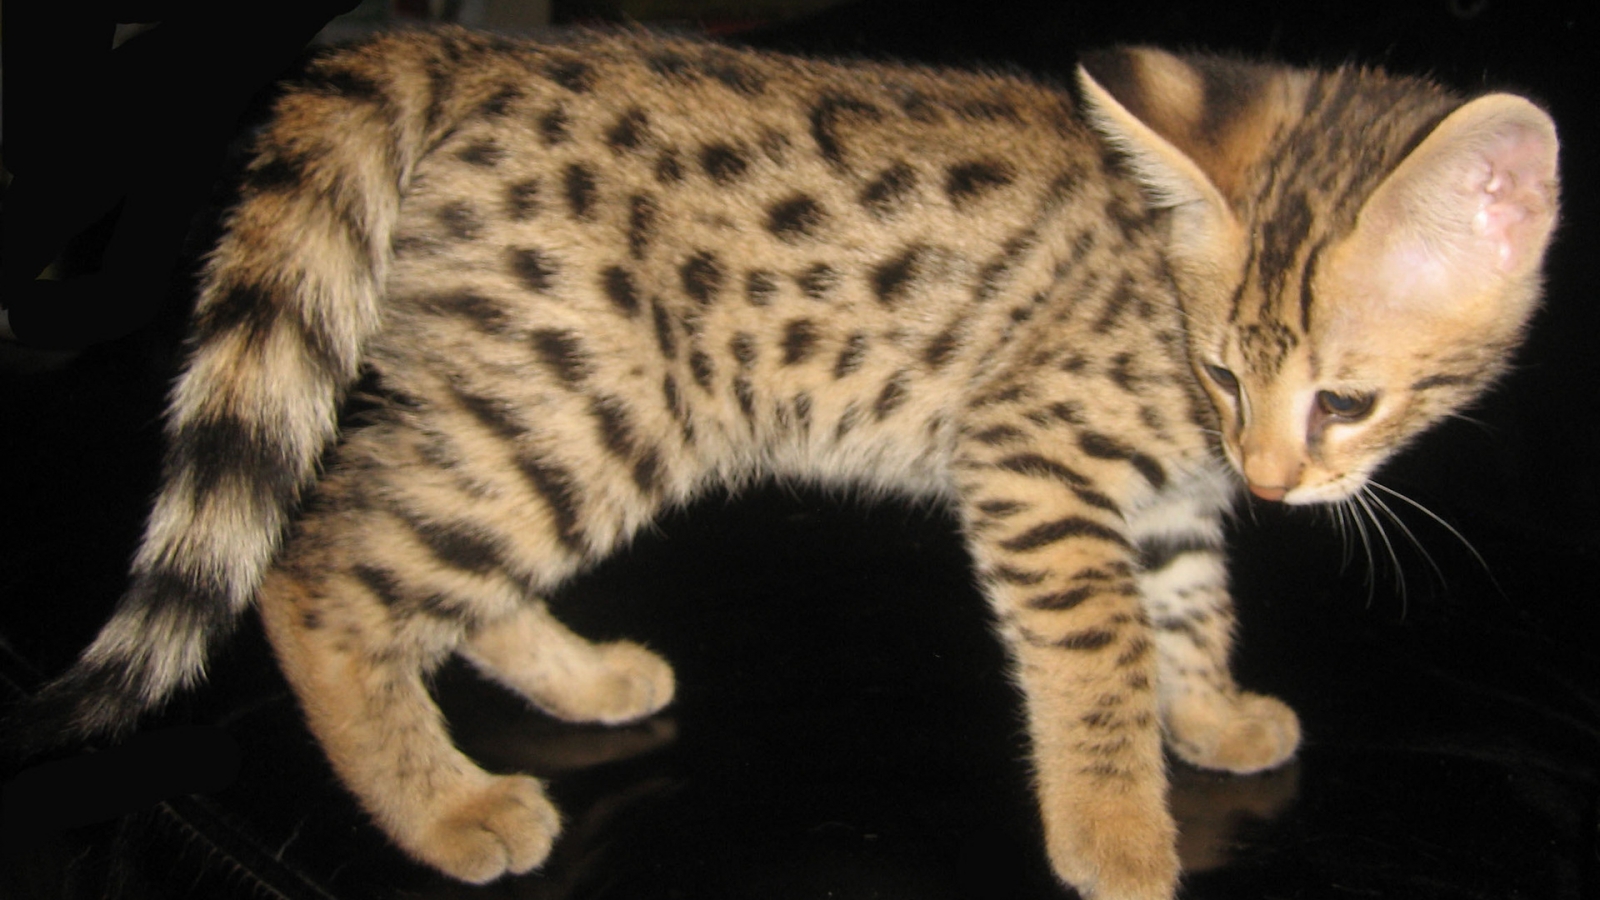 Savannah Kitten for 1600 x 900 HDTV resolution